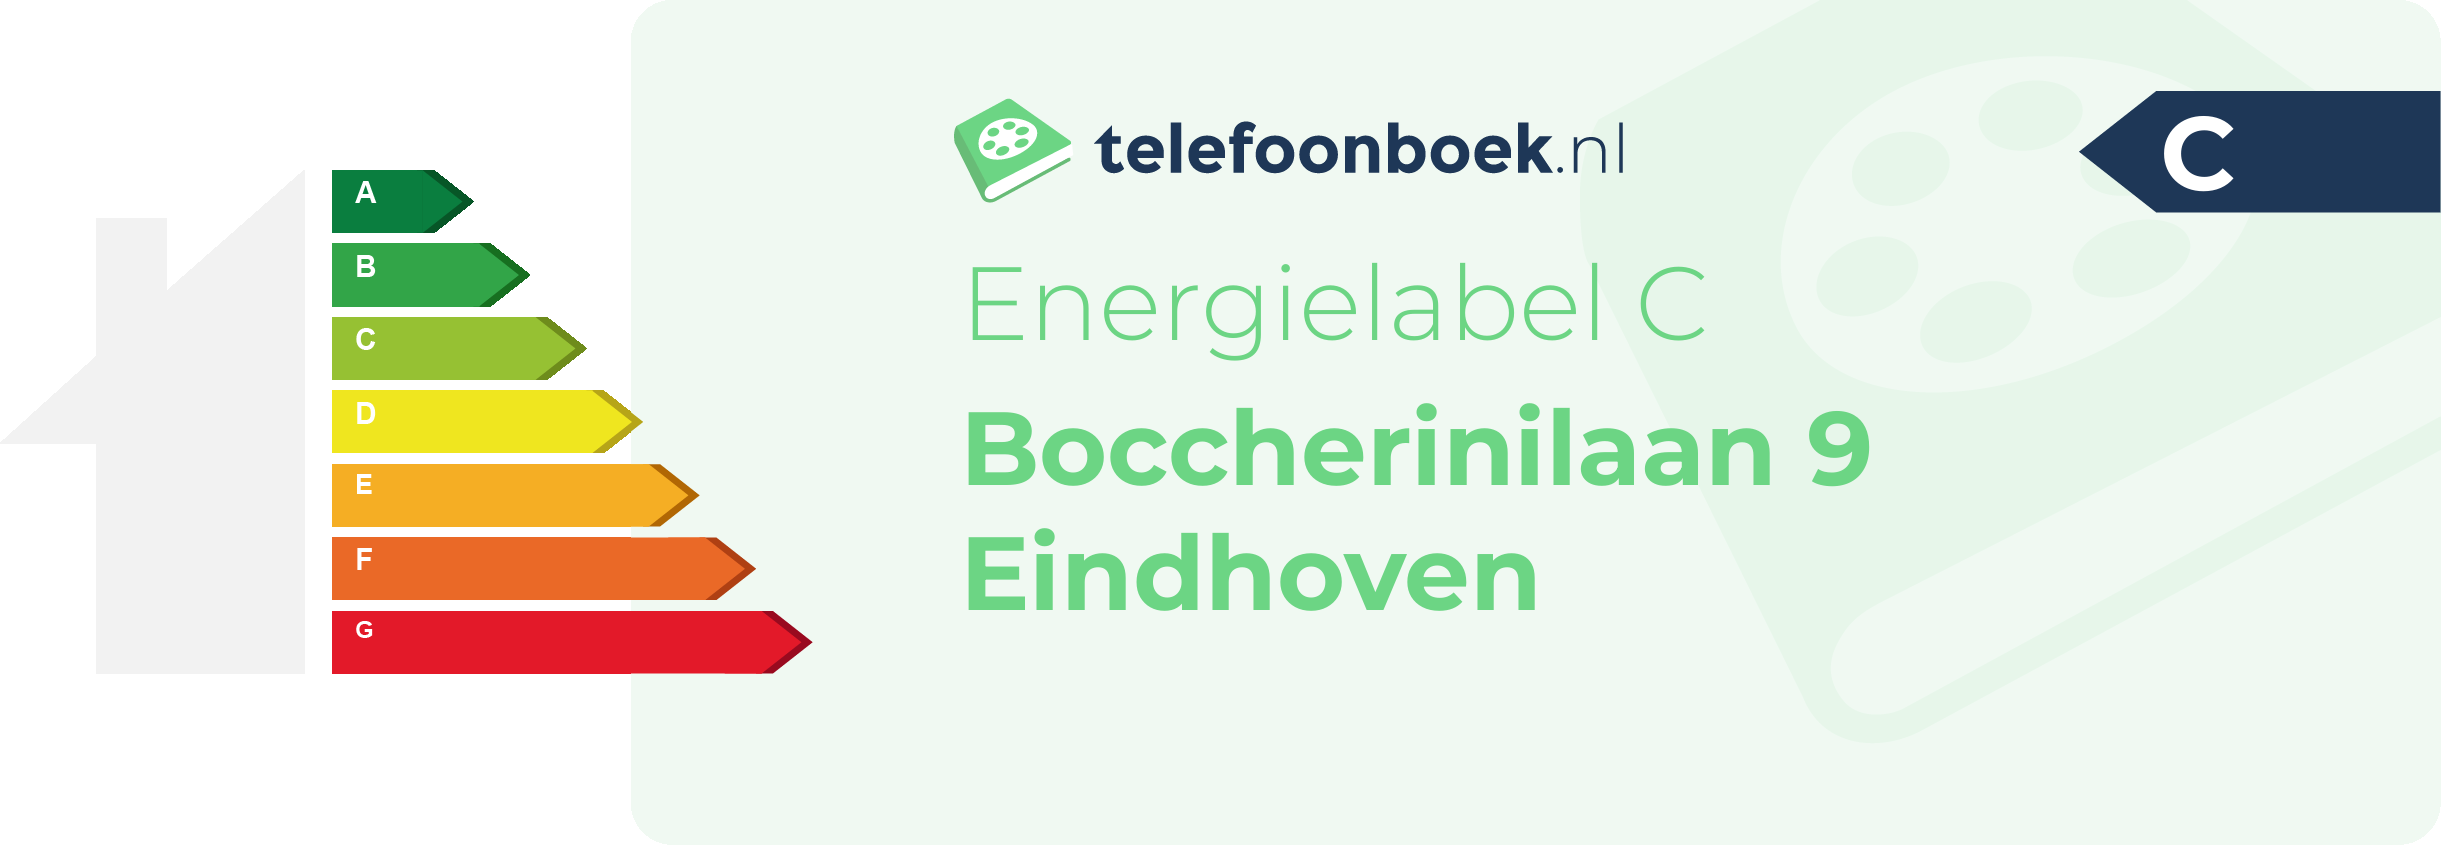 Energielabel Boccherinilaan 9 Eindhoven